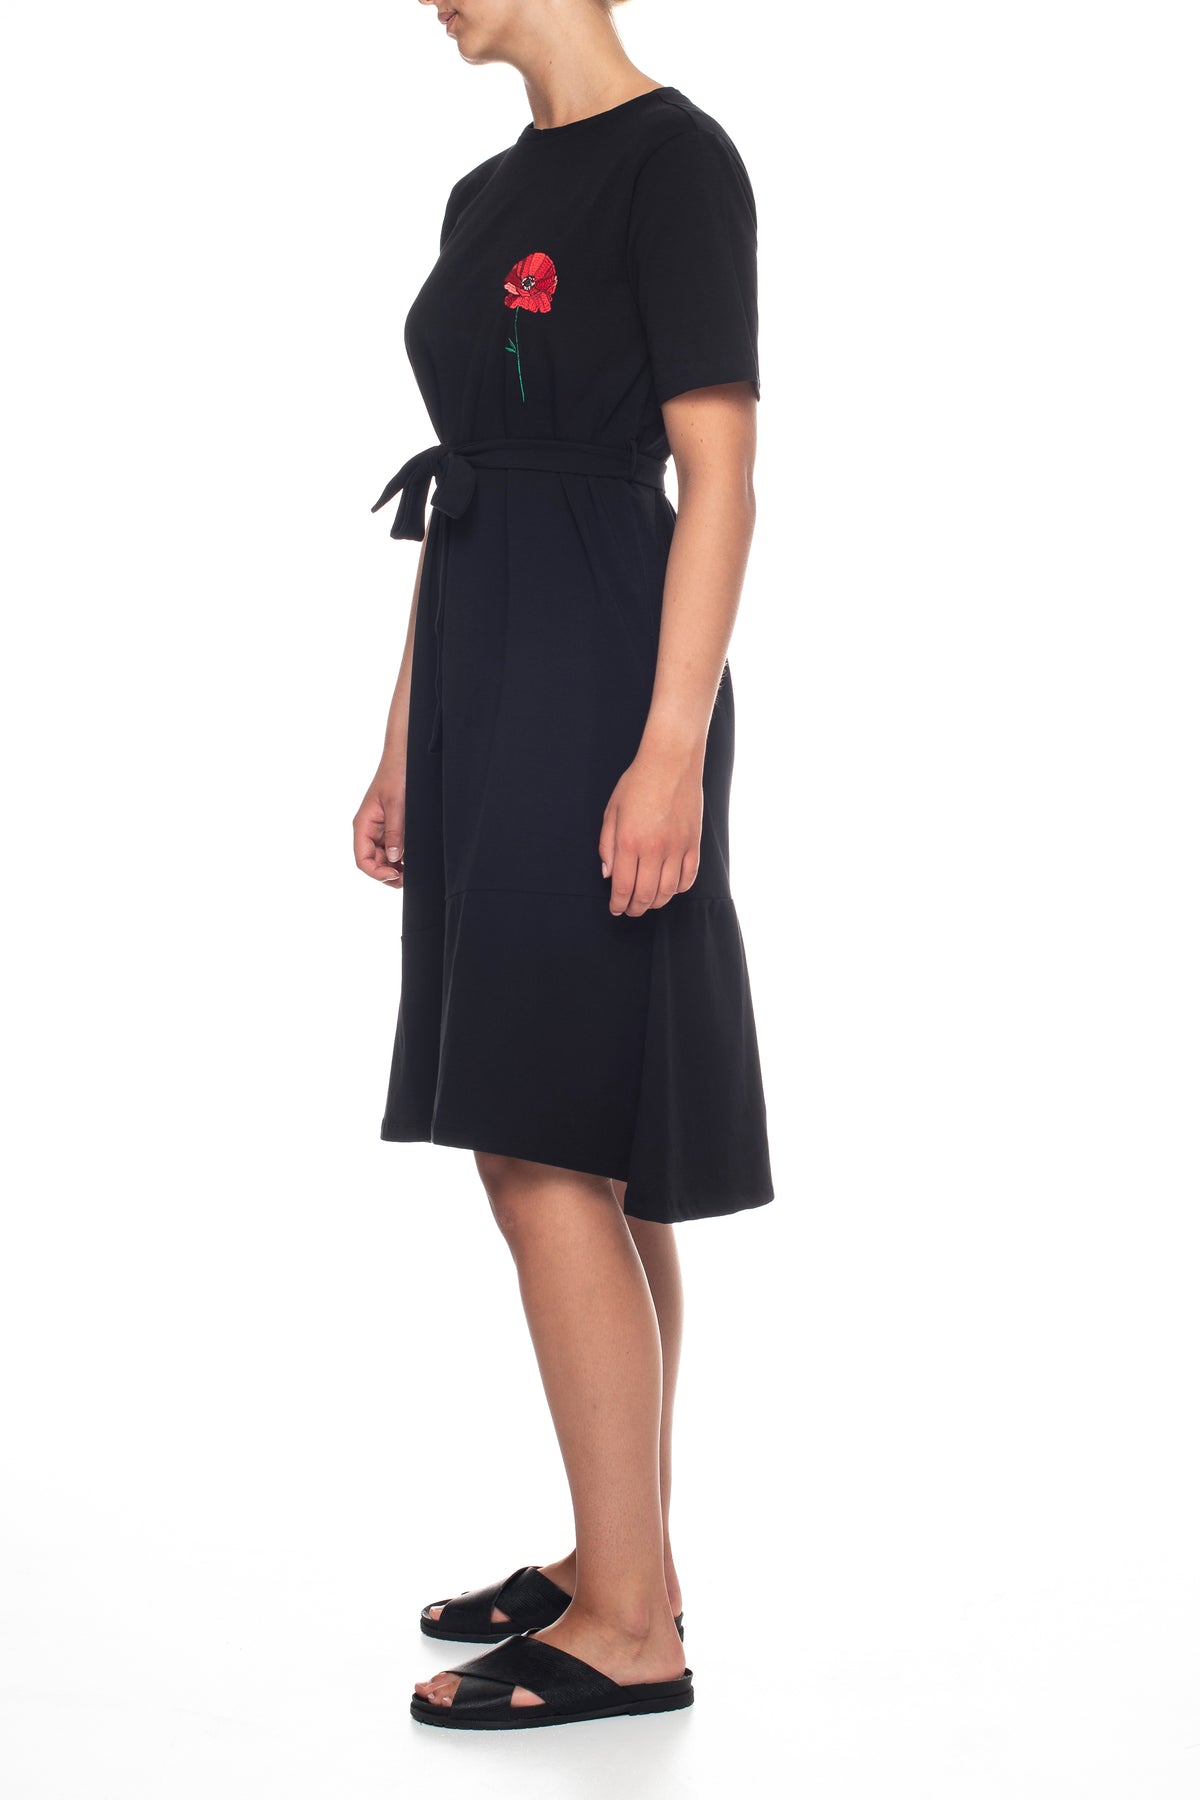 ENJOY kjole - Black - Veronica B. Vallenes - Kjoler - VILLOID.no